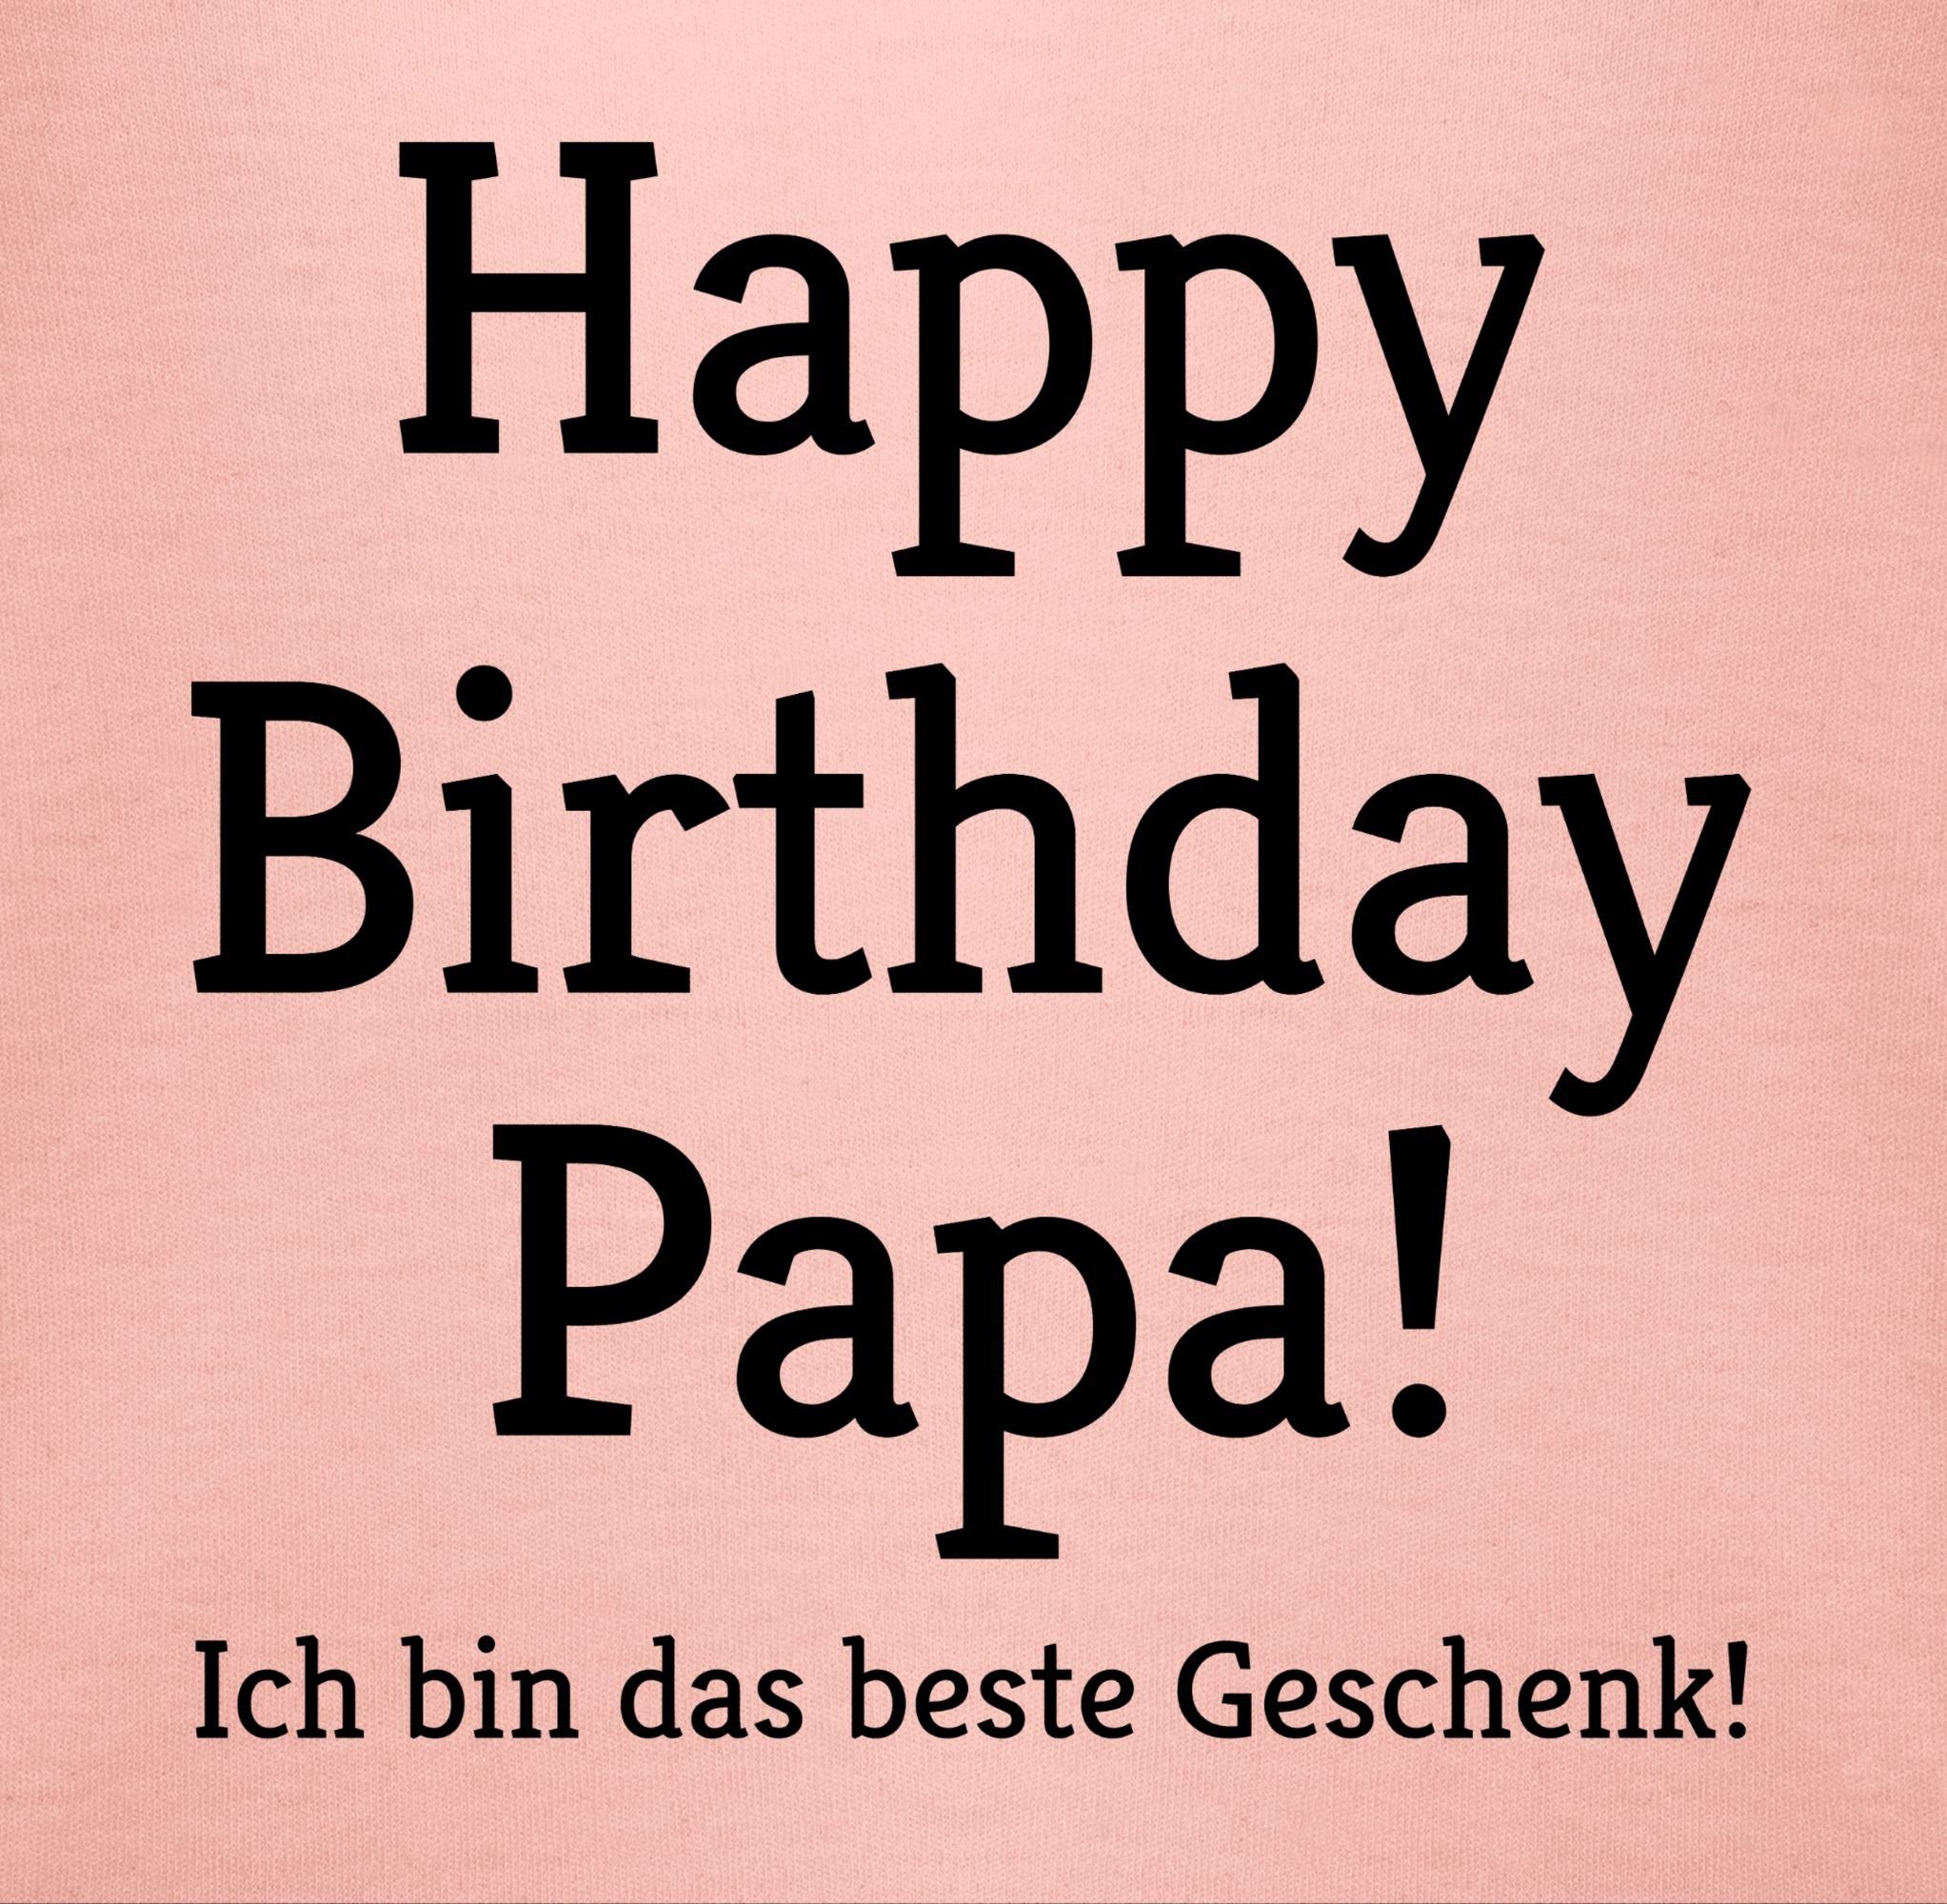 Shirtracer Papa! Event Ich Babyrosa Birthday 1 Geschenk! Happy bin das T-Shirt Geschenke Baby